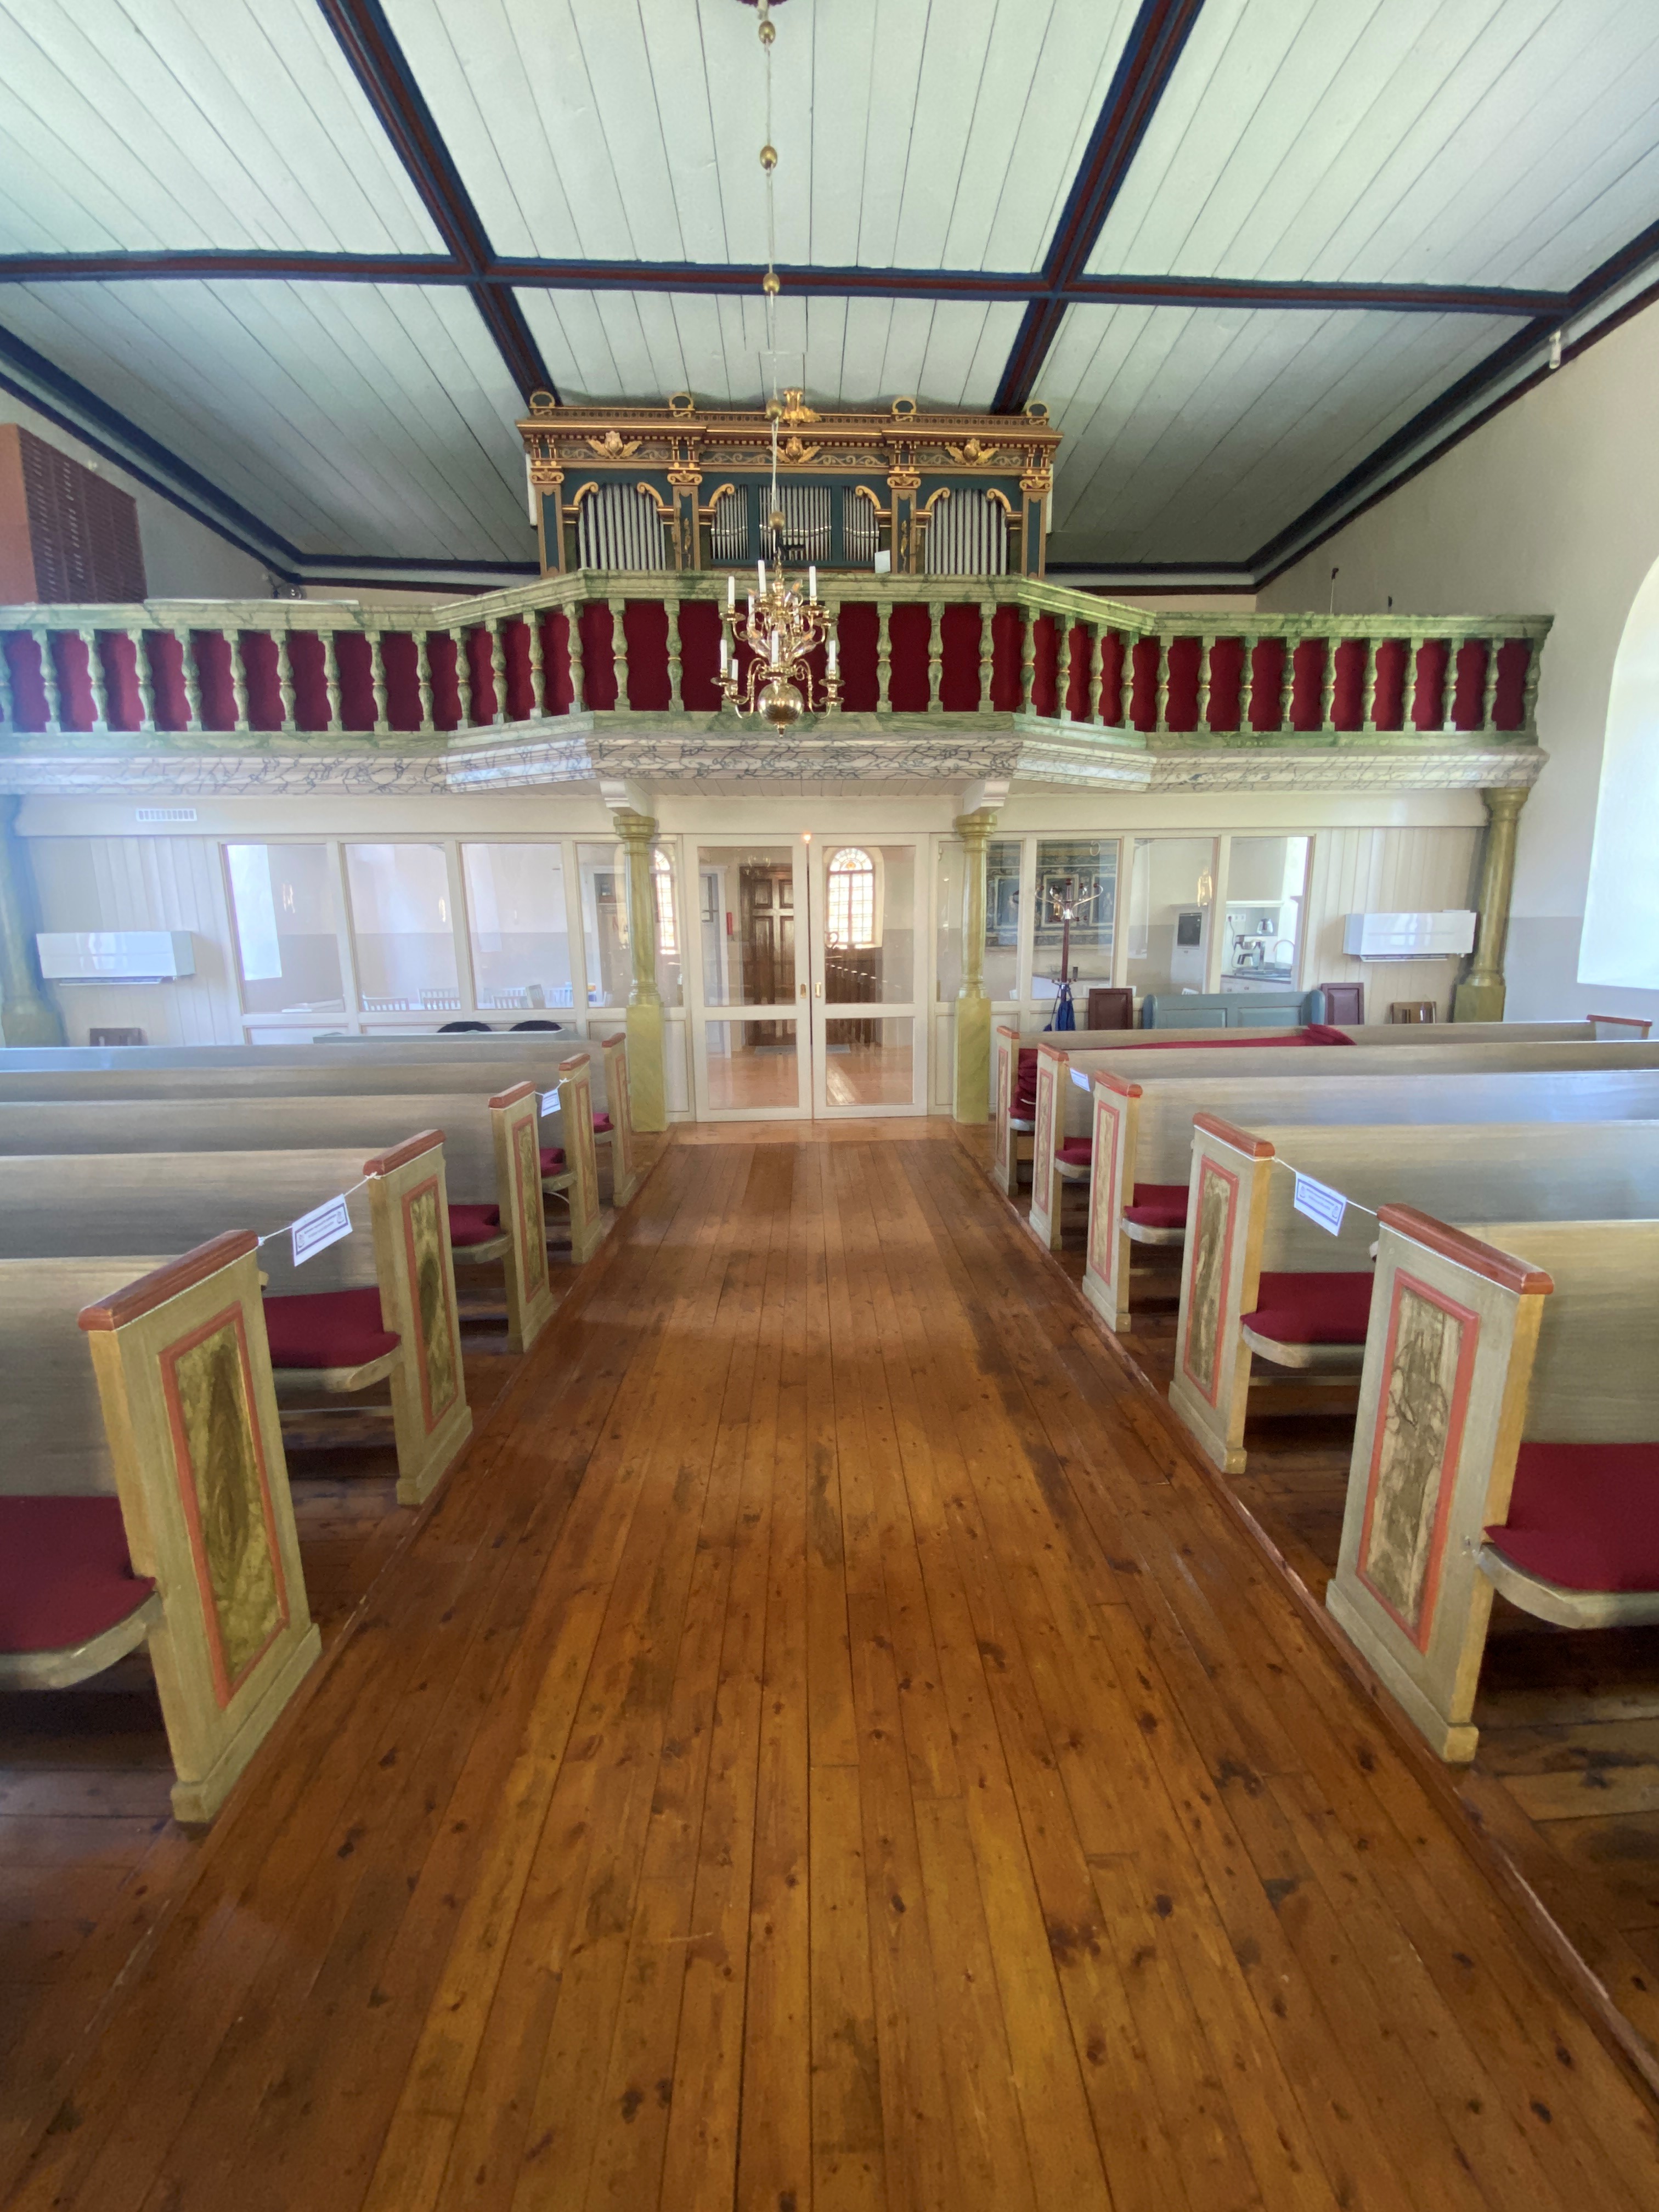 Daretorps kyrkas kyrkorum med "parlatoriet" i fokus, ett nytt rum i kyrkan som står klart hösten 2021.